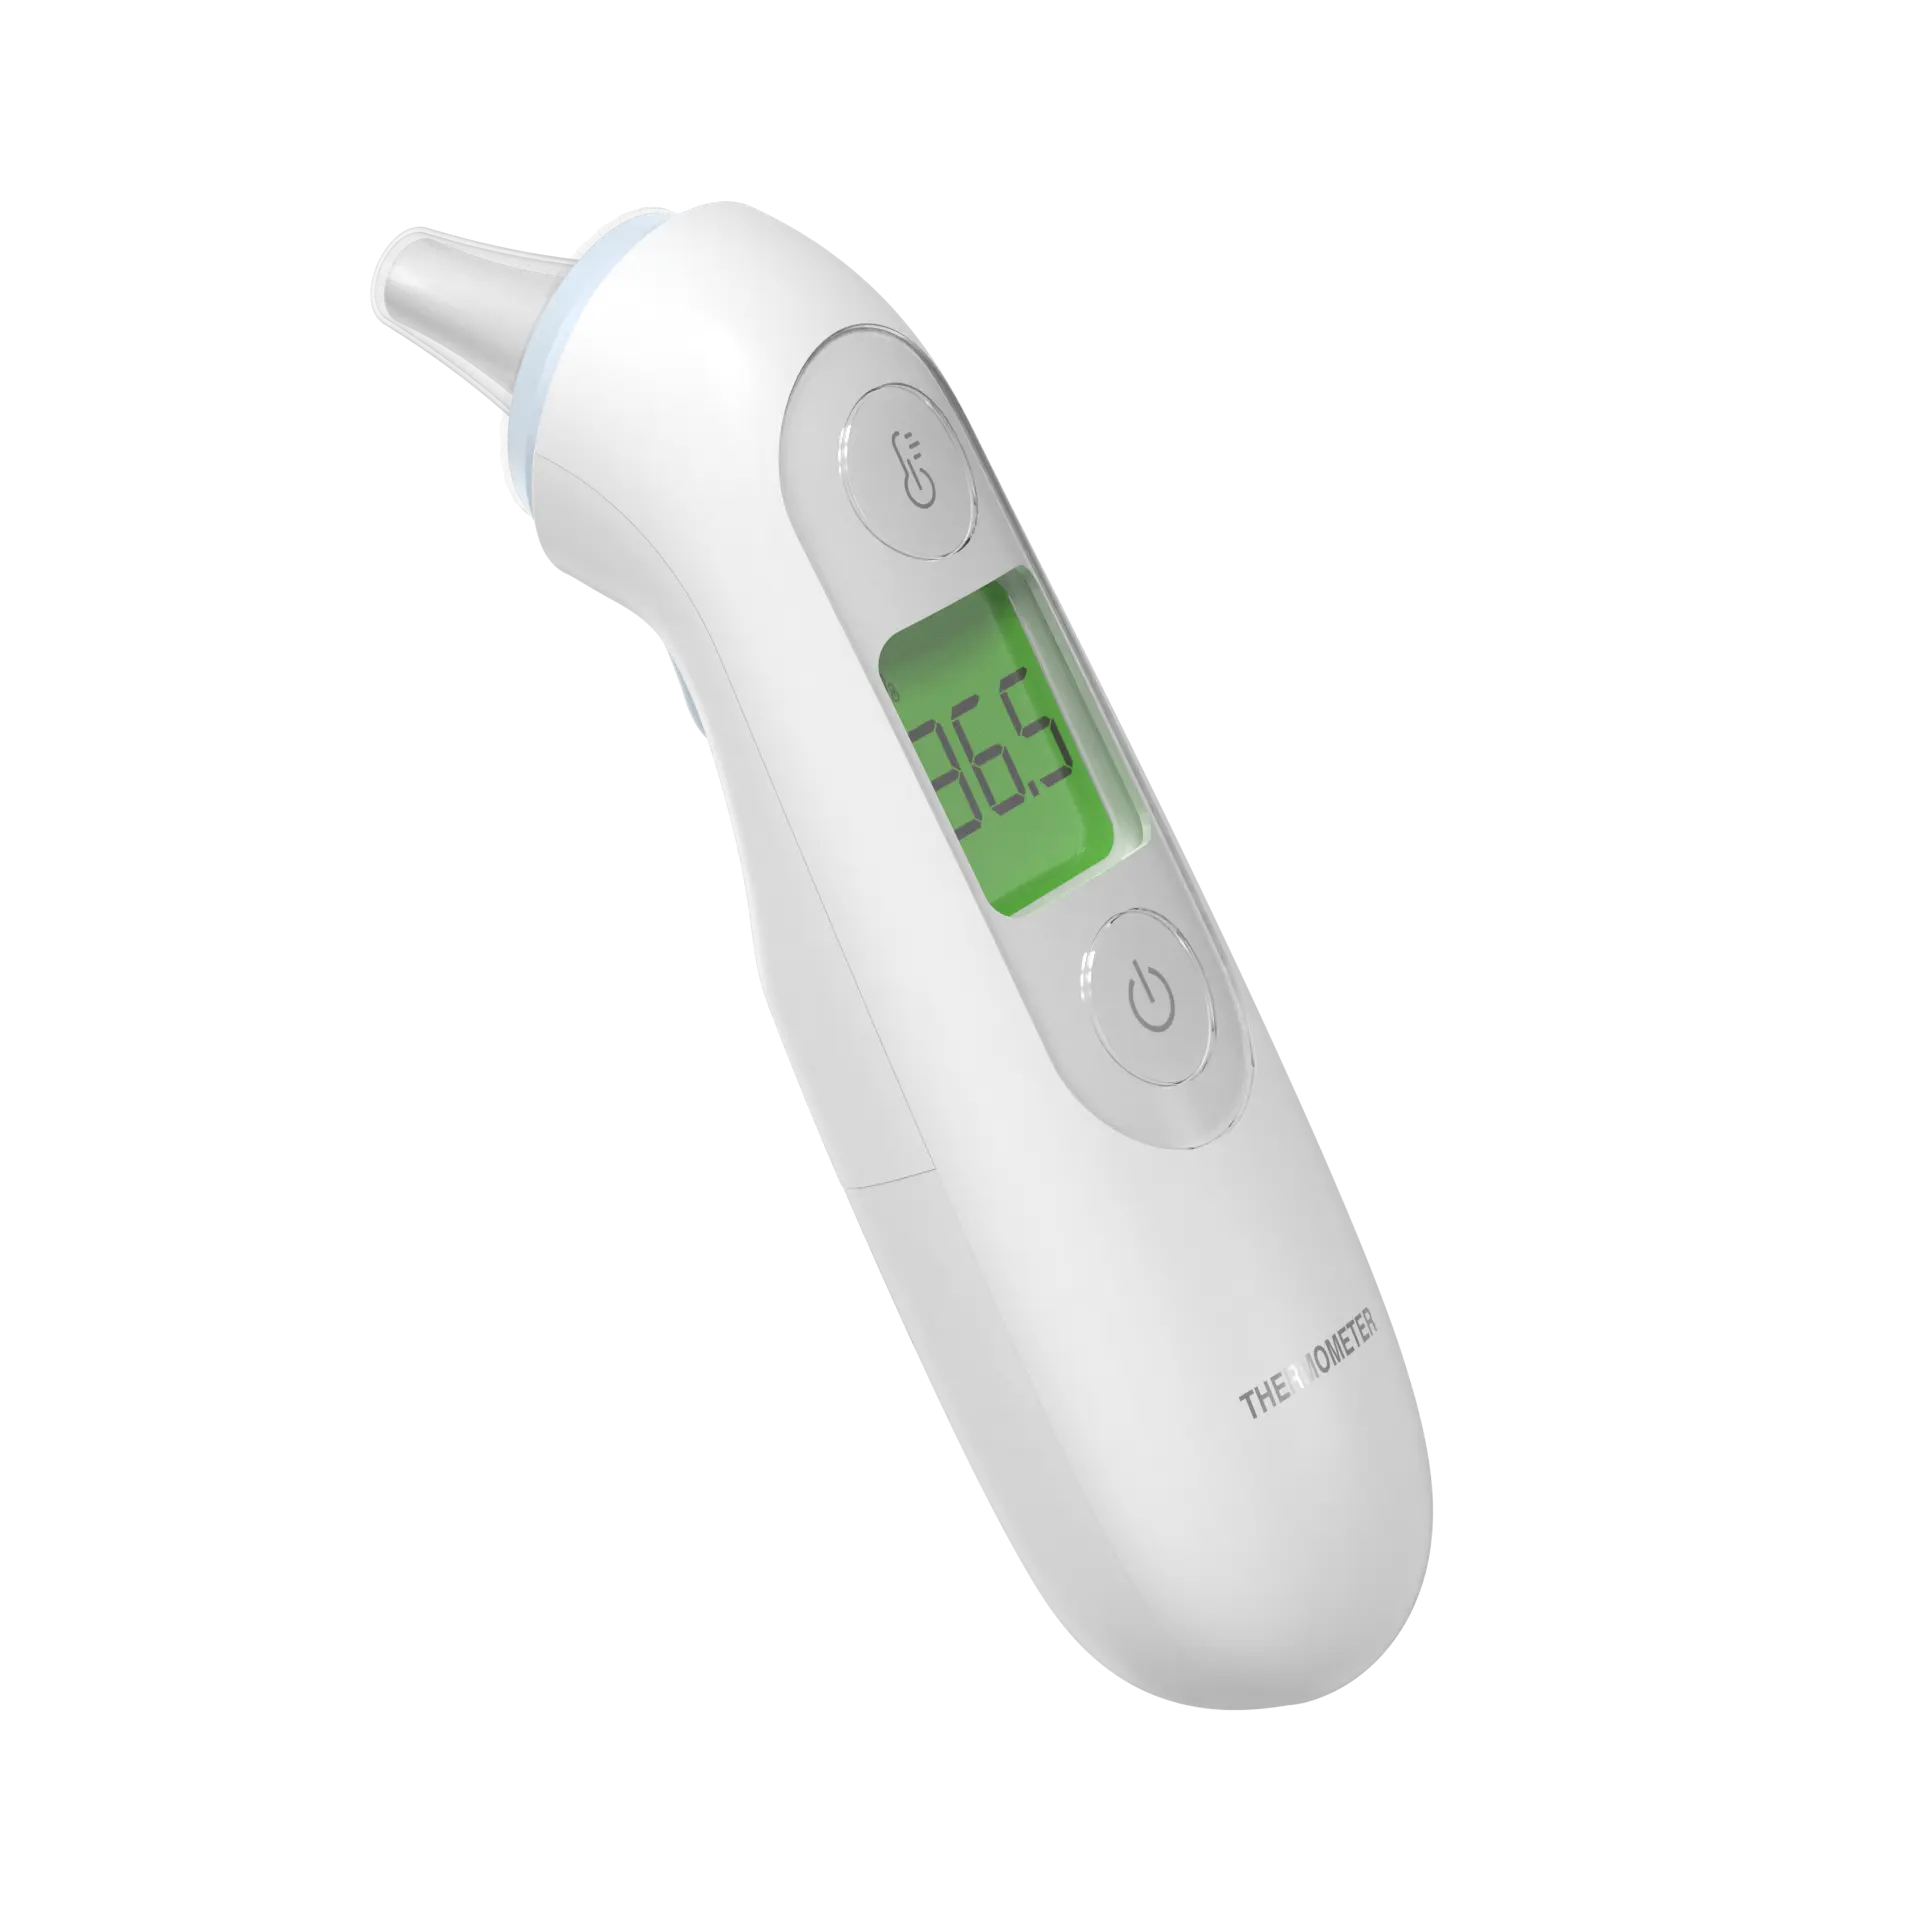 Huaan Med điện tử không liên hệ với nhiệt kế y tế termometro bé Nhiệt kế kỹ thuật số hồng ngoại trán tai Nhiệt kế